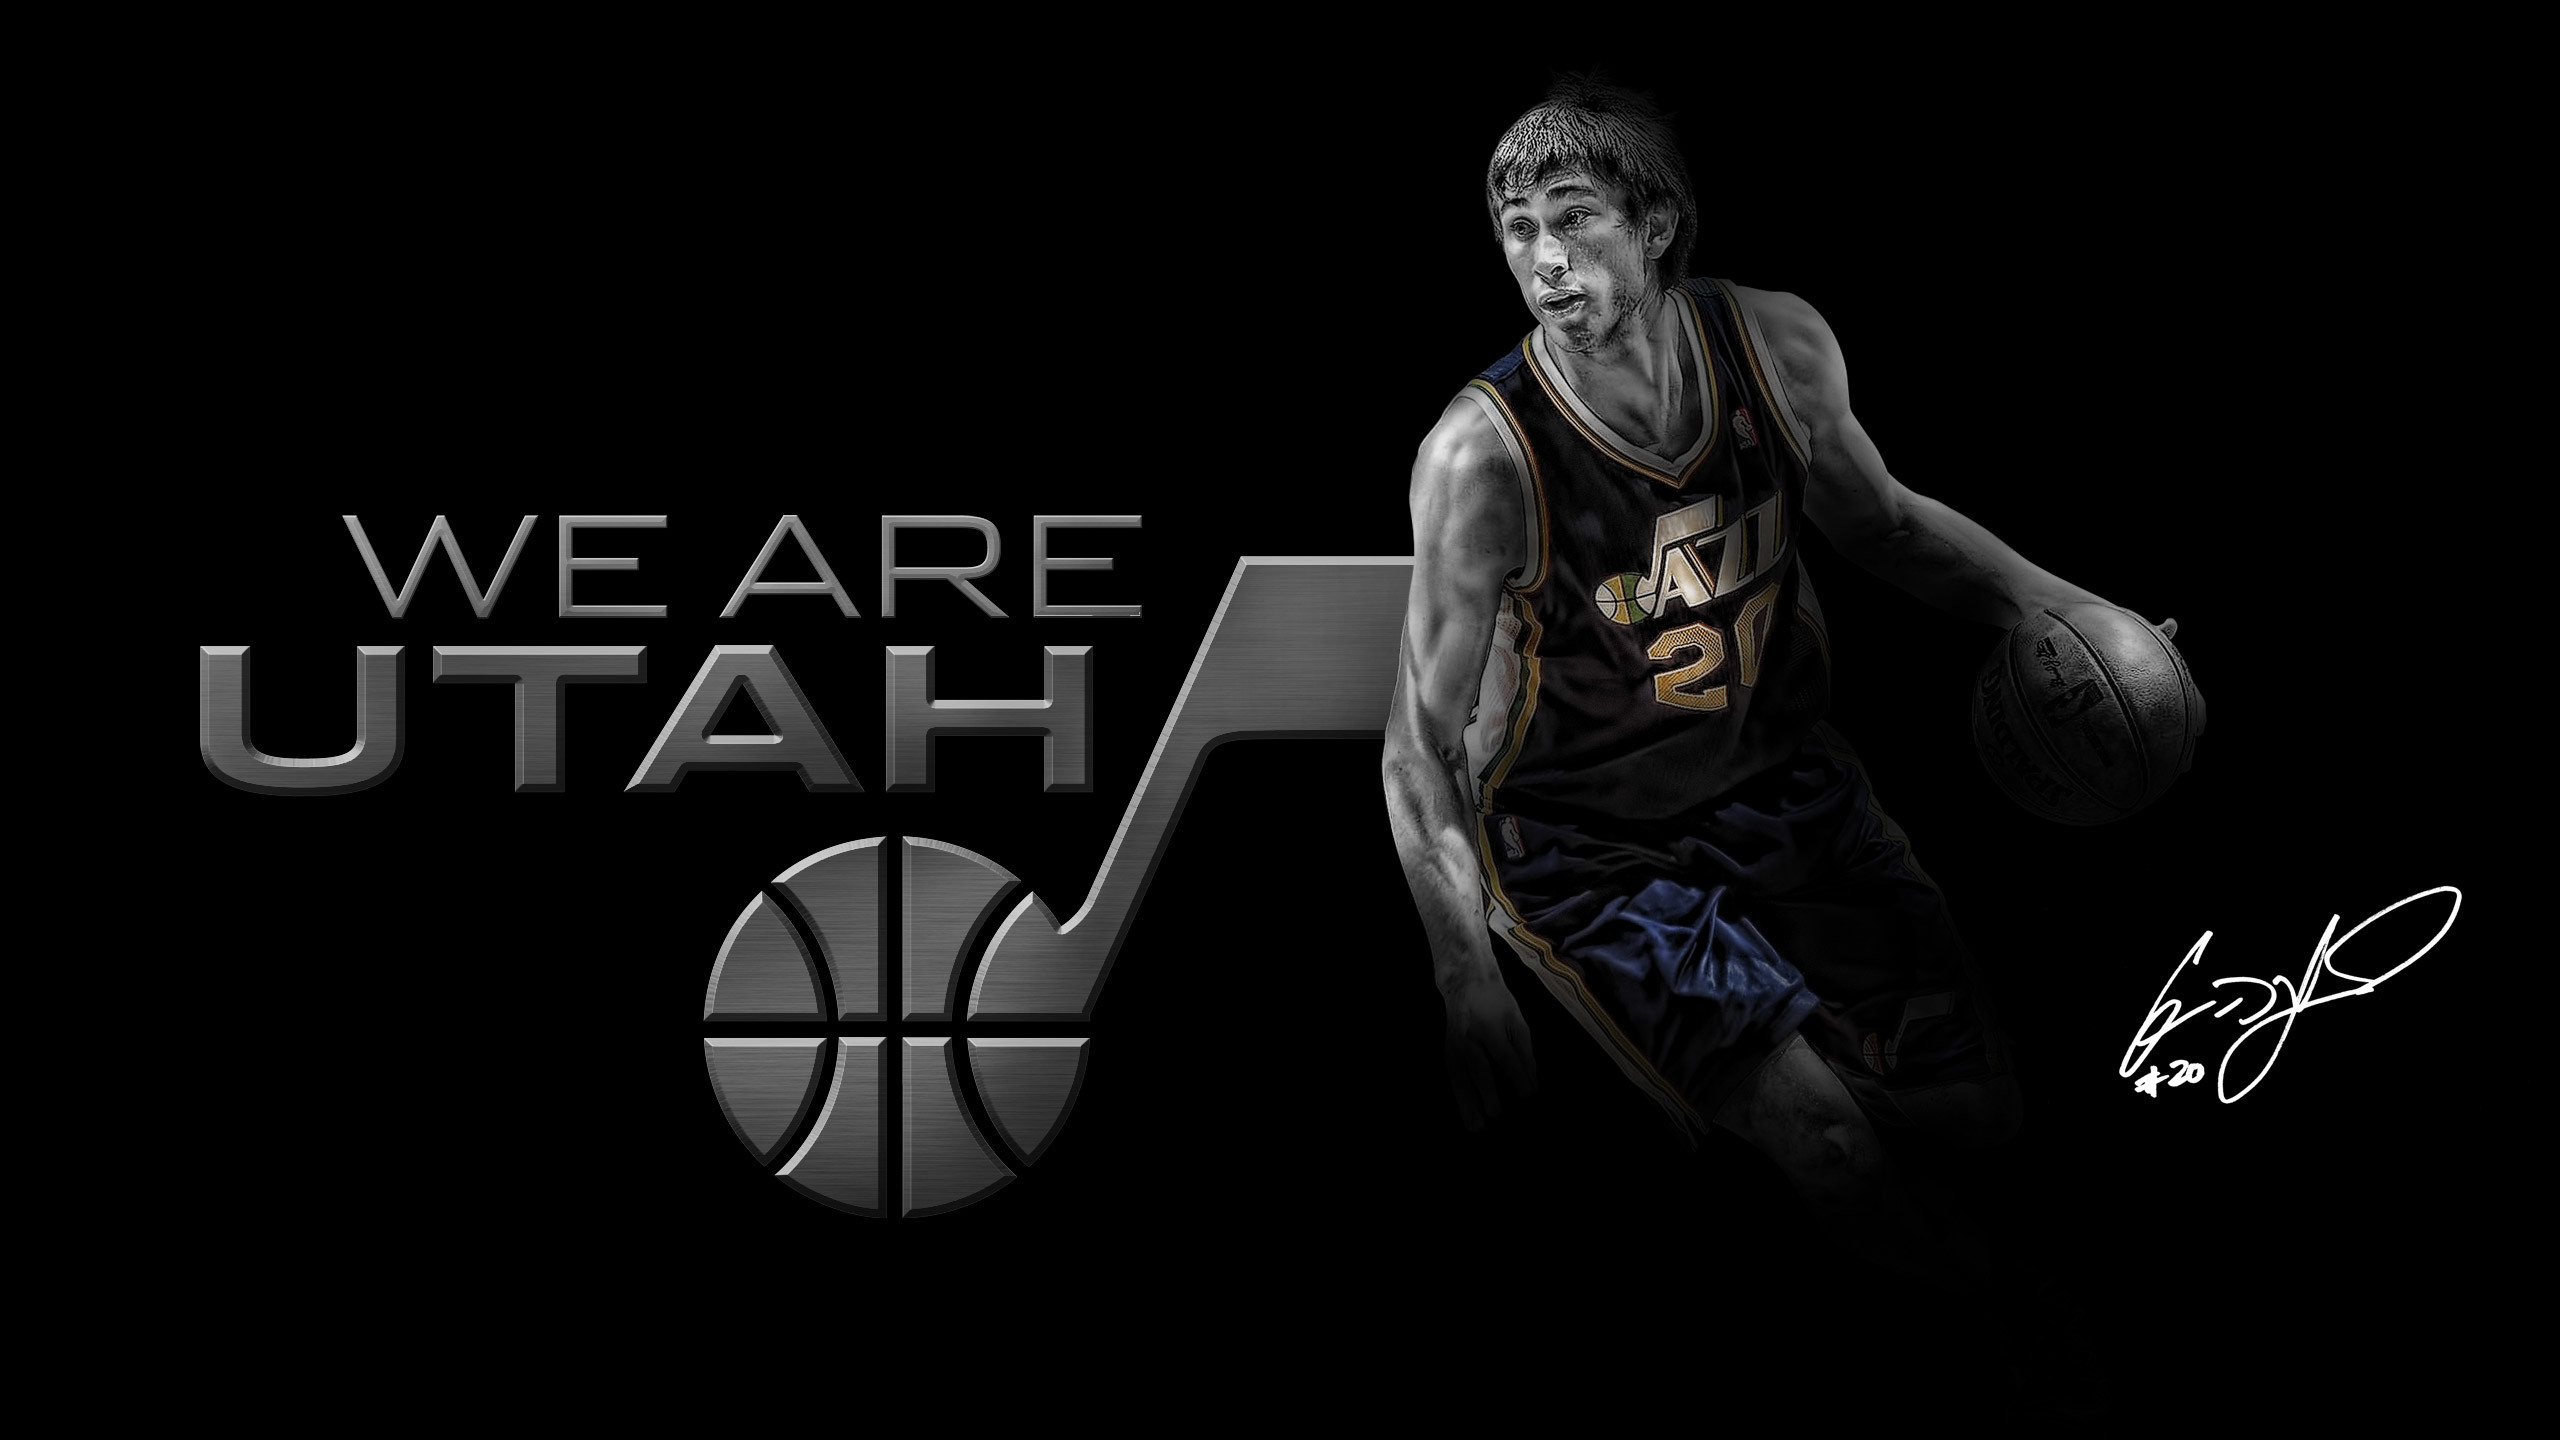 2560x1440 Gordon Hayward - 2013 We Are Utah Jazz